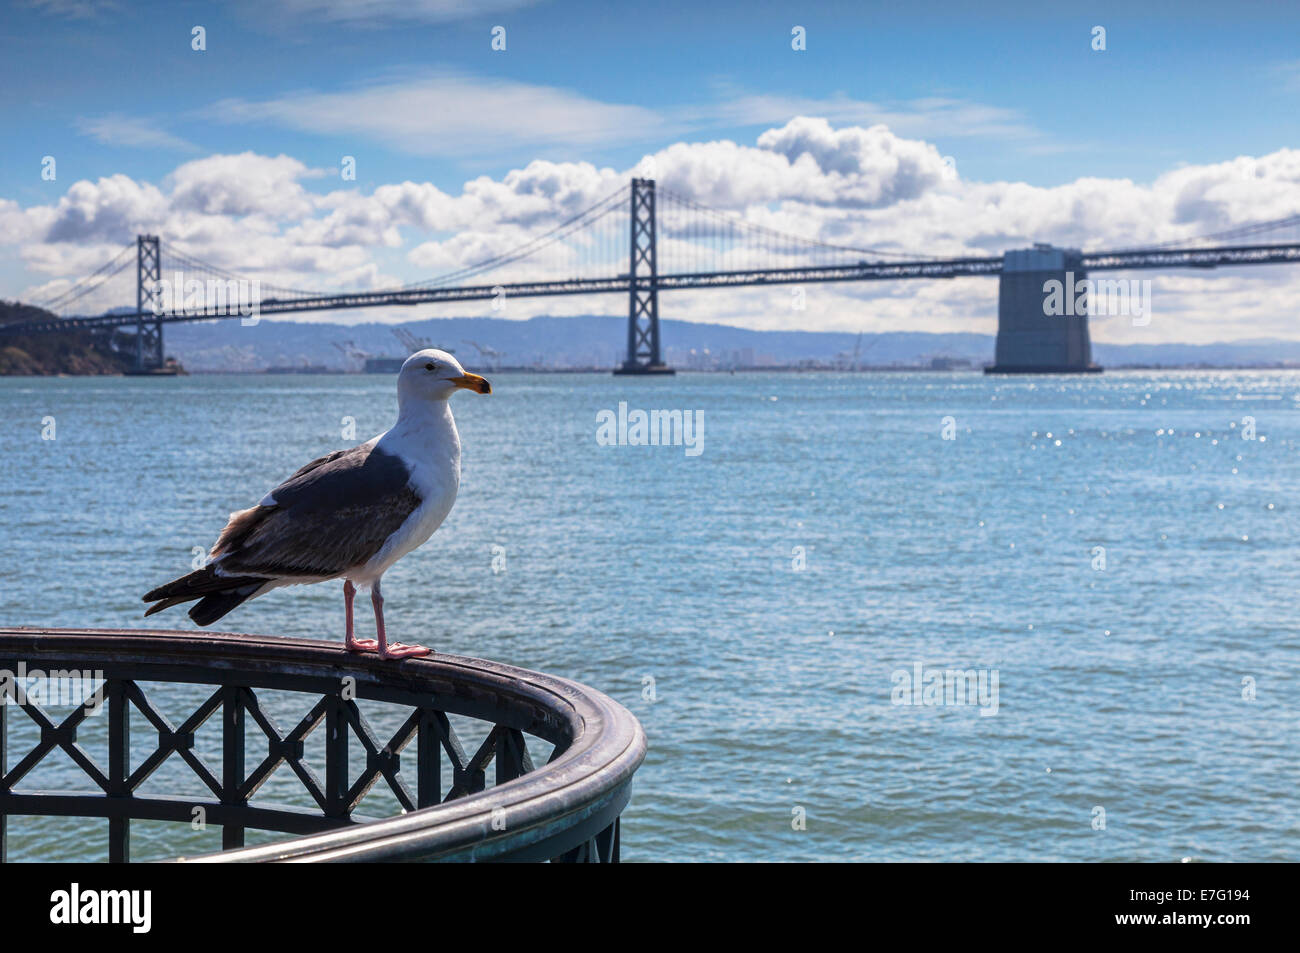 La baia di San Francisco, un gabbiano appollaiato su di una rotaia, il Bay Bridge in background. Focus su seagull. Foto Stock